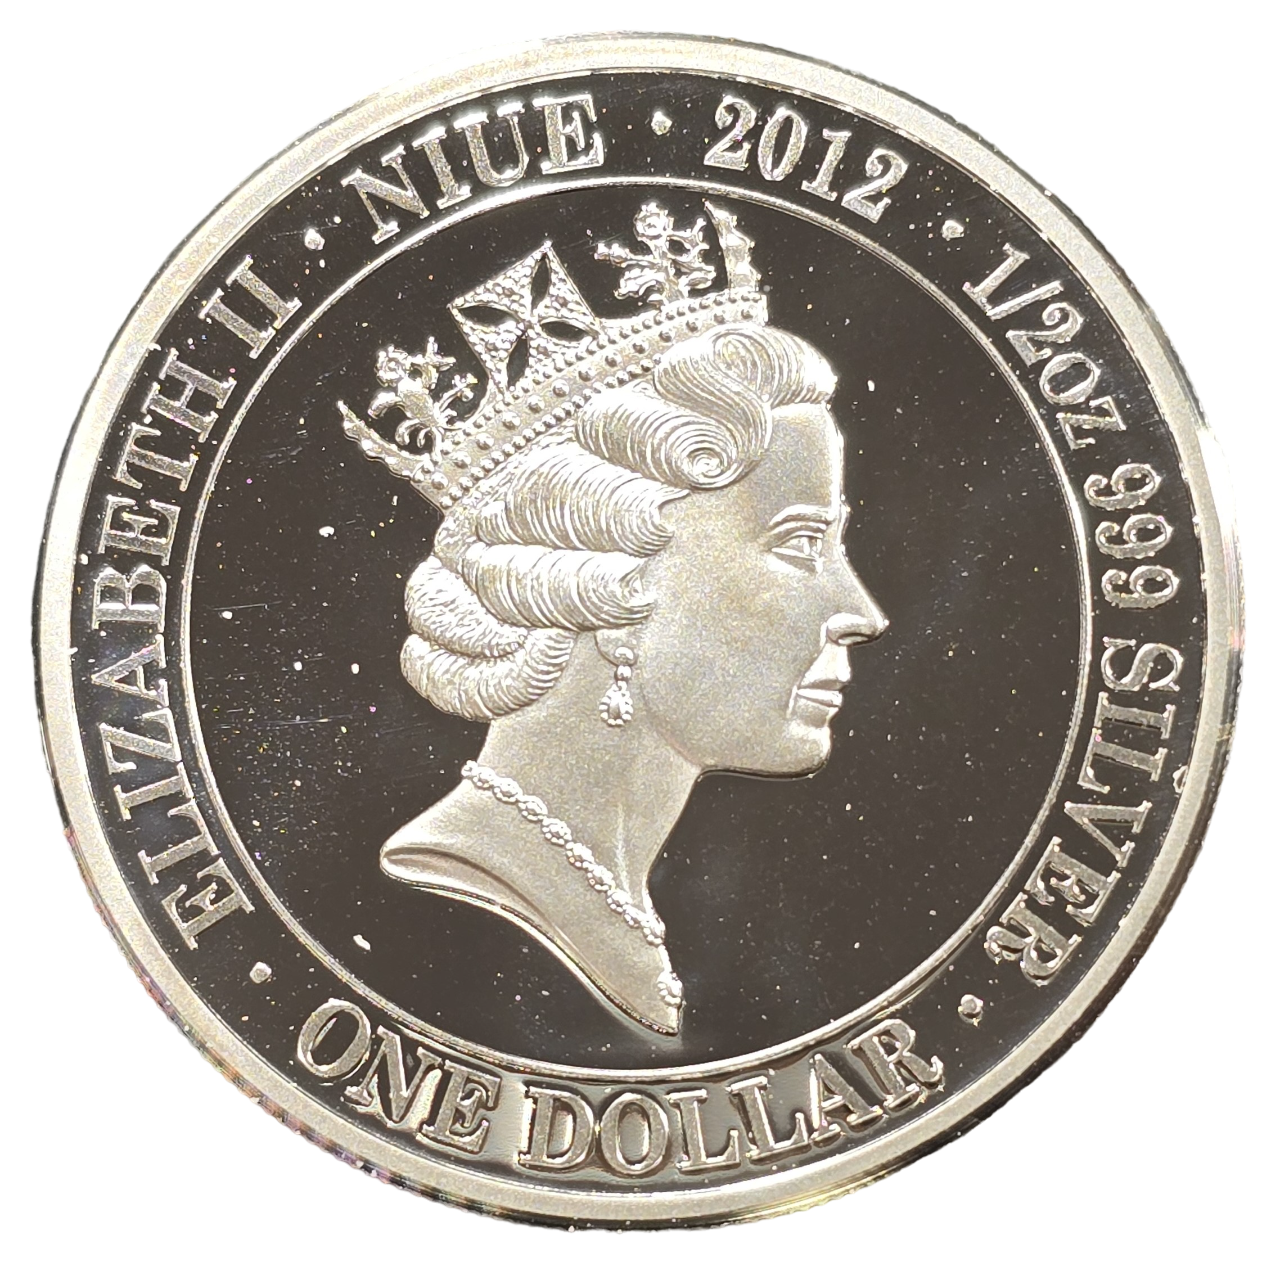 2012 Niue - Vietnam War - Australian involvement 1962 - 1977 - 1/2oz Silver Proof Coin